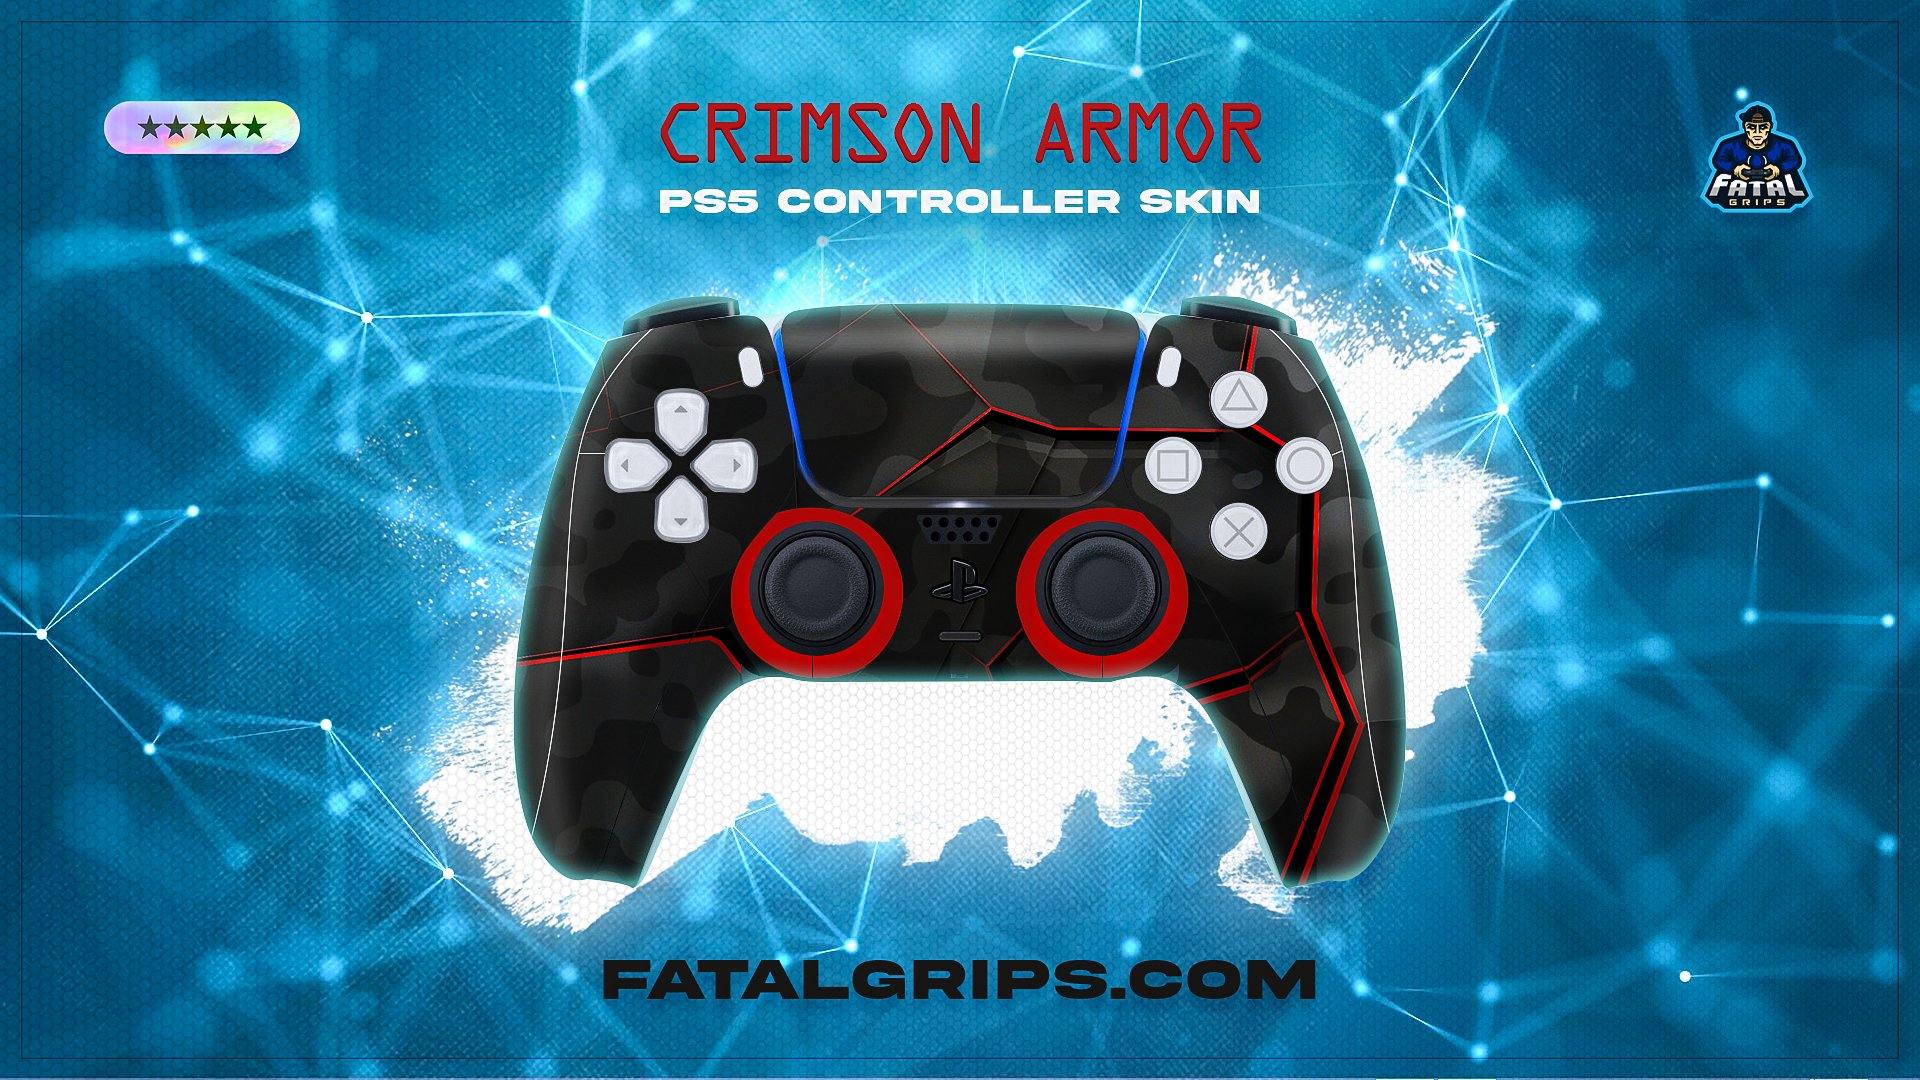 Crimson Armor PS5 Controller Skin - Fatal Grips